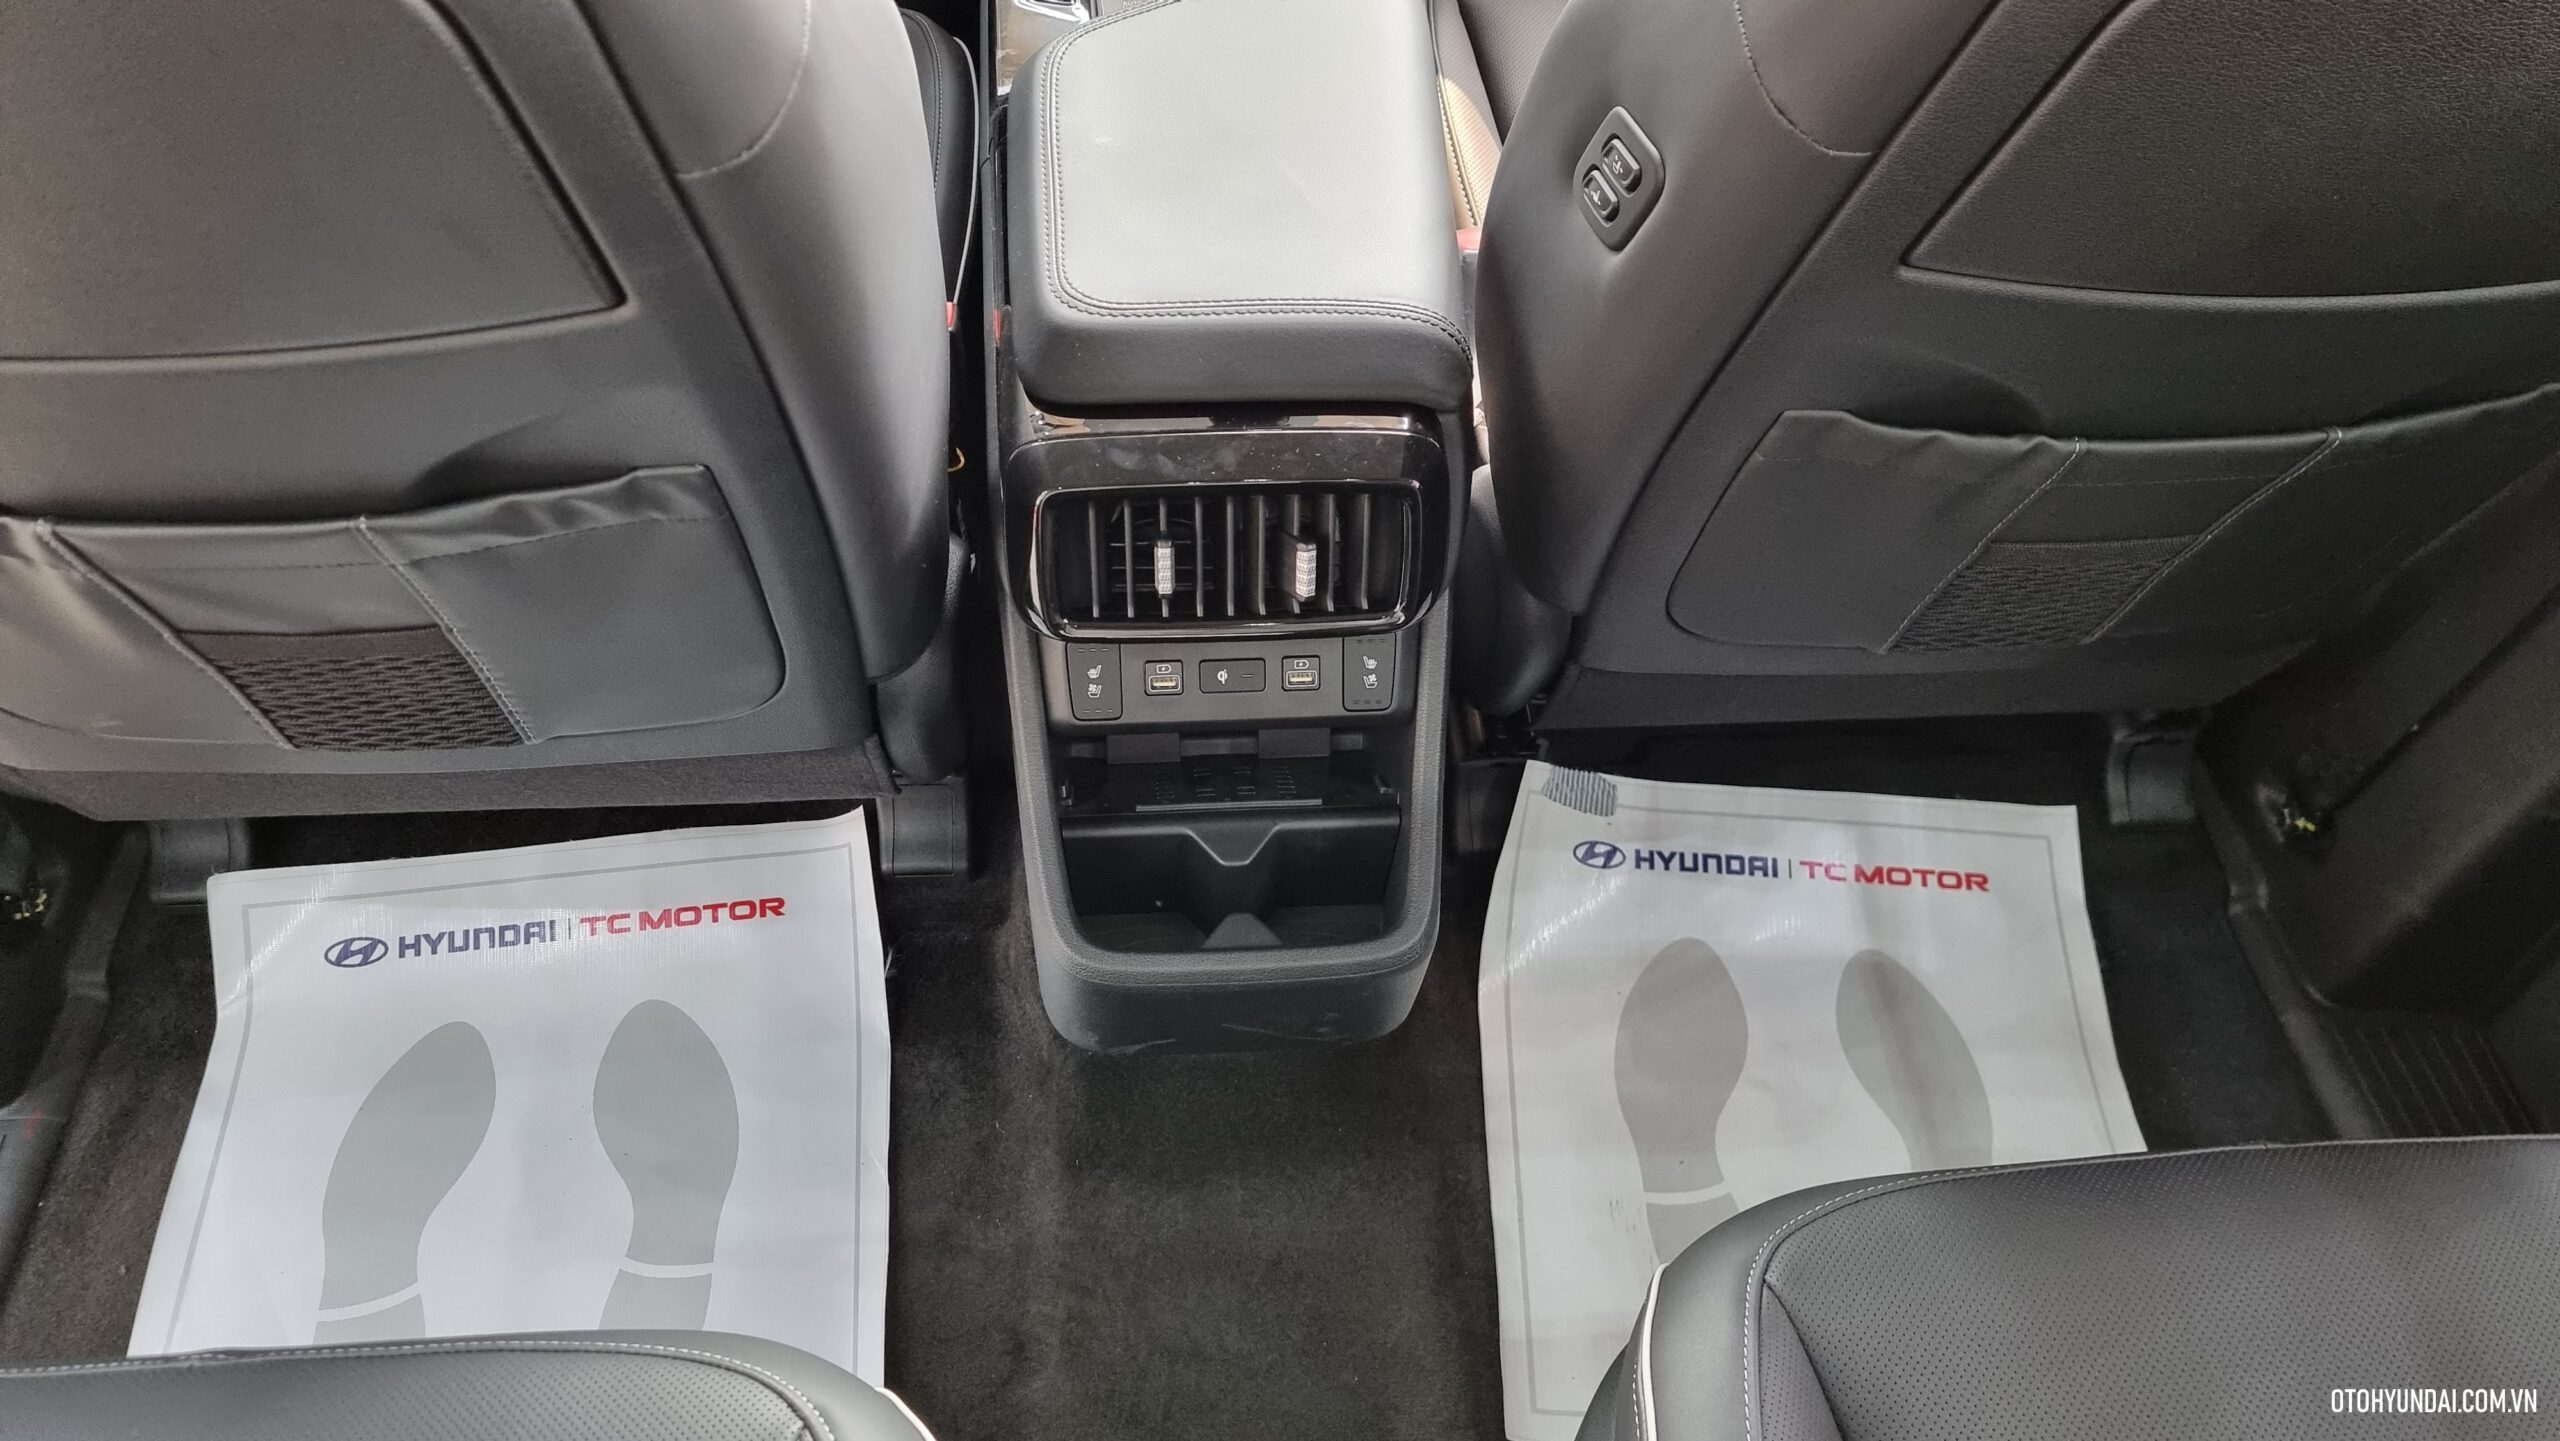 Hyundai custin 2024 | Cửa gió hàng ghế sau trên Hyundai Custin 2024 là một tiện ích đáng chú ý, giúp hành khách ở phía sau tận hưởng không gian thoải mái và mát mẻ trong suốt hành trình.